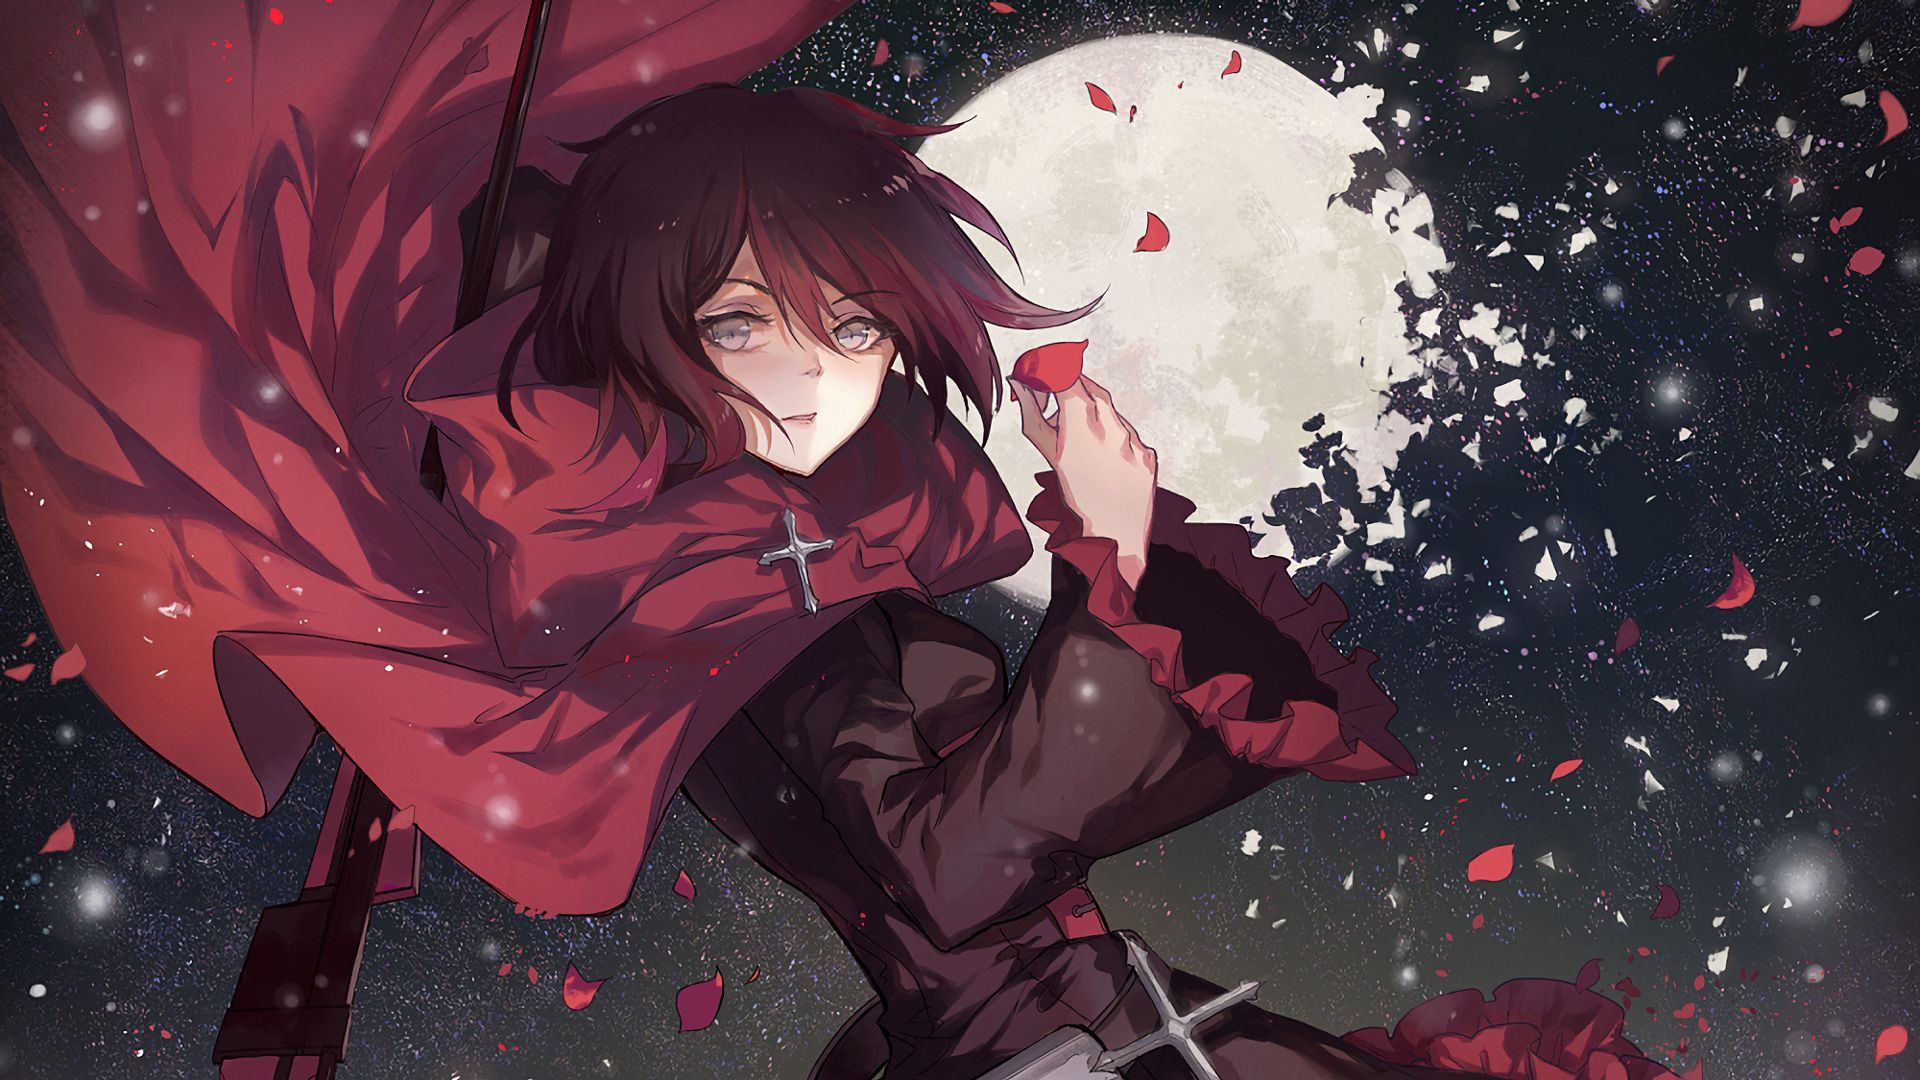 Anime RWBY Ruby Rose Wallpaper. Rwby, Anime